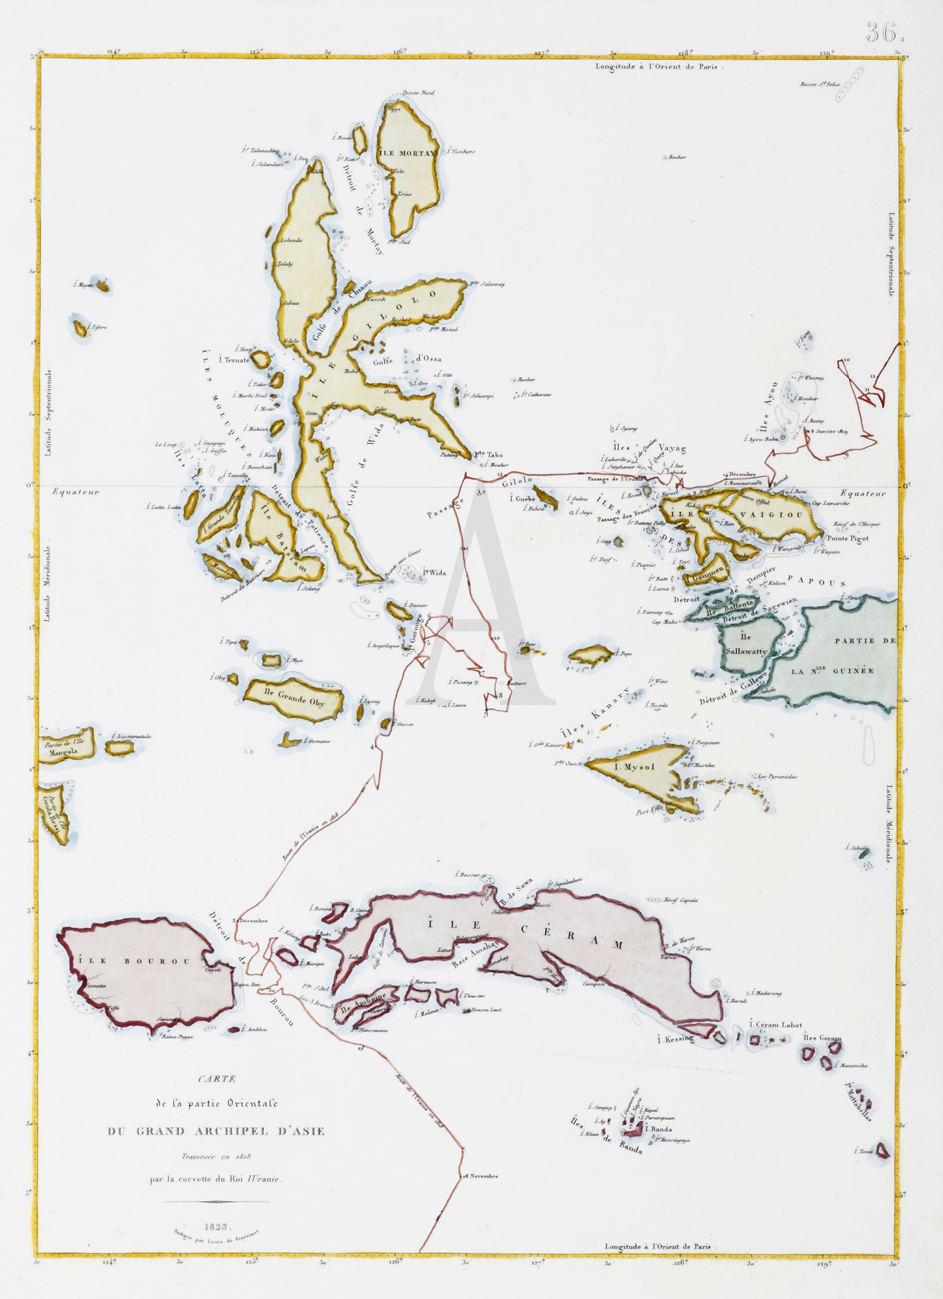 Carte de la partie Orientale du Grand Archipel D'Asie Traversee en 1818 par la corvette du Roi l'Uranie. - Antique Print from 1825